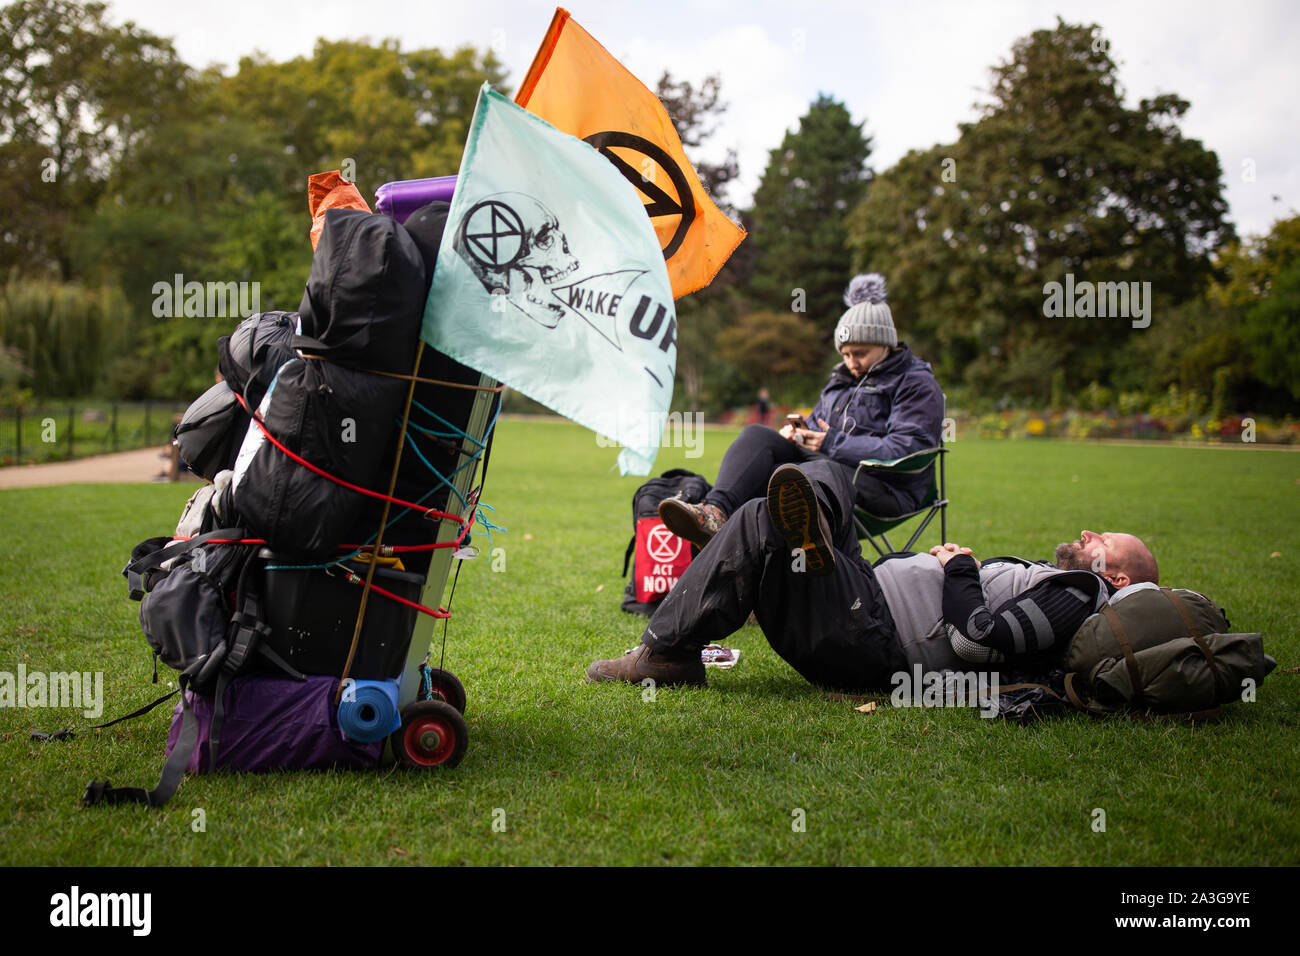 Les manifestants campent dans St James's Park au cours d'une rébellion d'Extinction (XR) changement climatique protester dans le centre de Londres. Banque D'Images